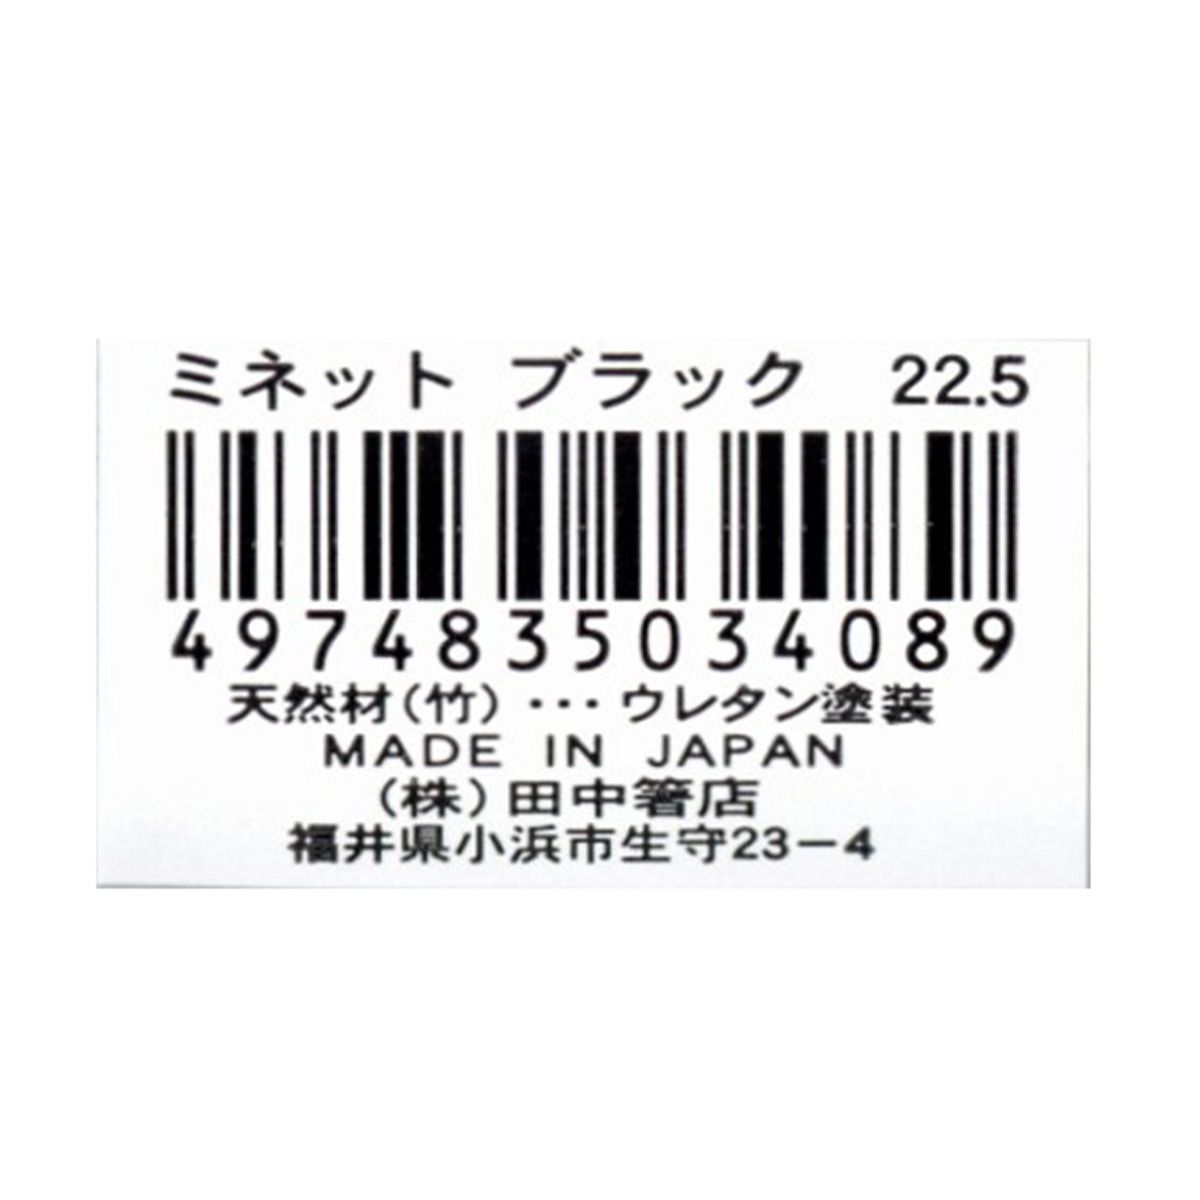 お箸 天然竹製 ミネット箸 ブラック 22.5cm 9001/345946